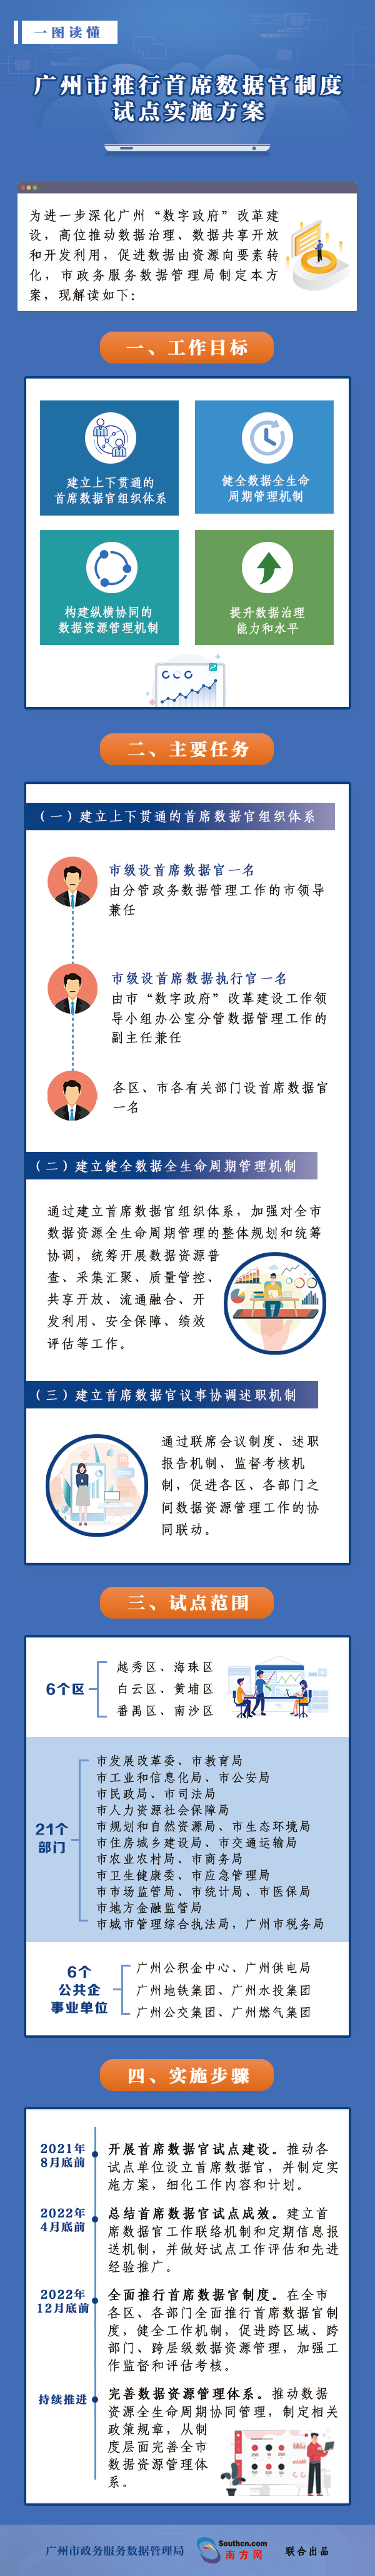 一图读懂《广州市推行首席数据官制度试点实施方案》-20210727.jpg